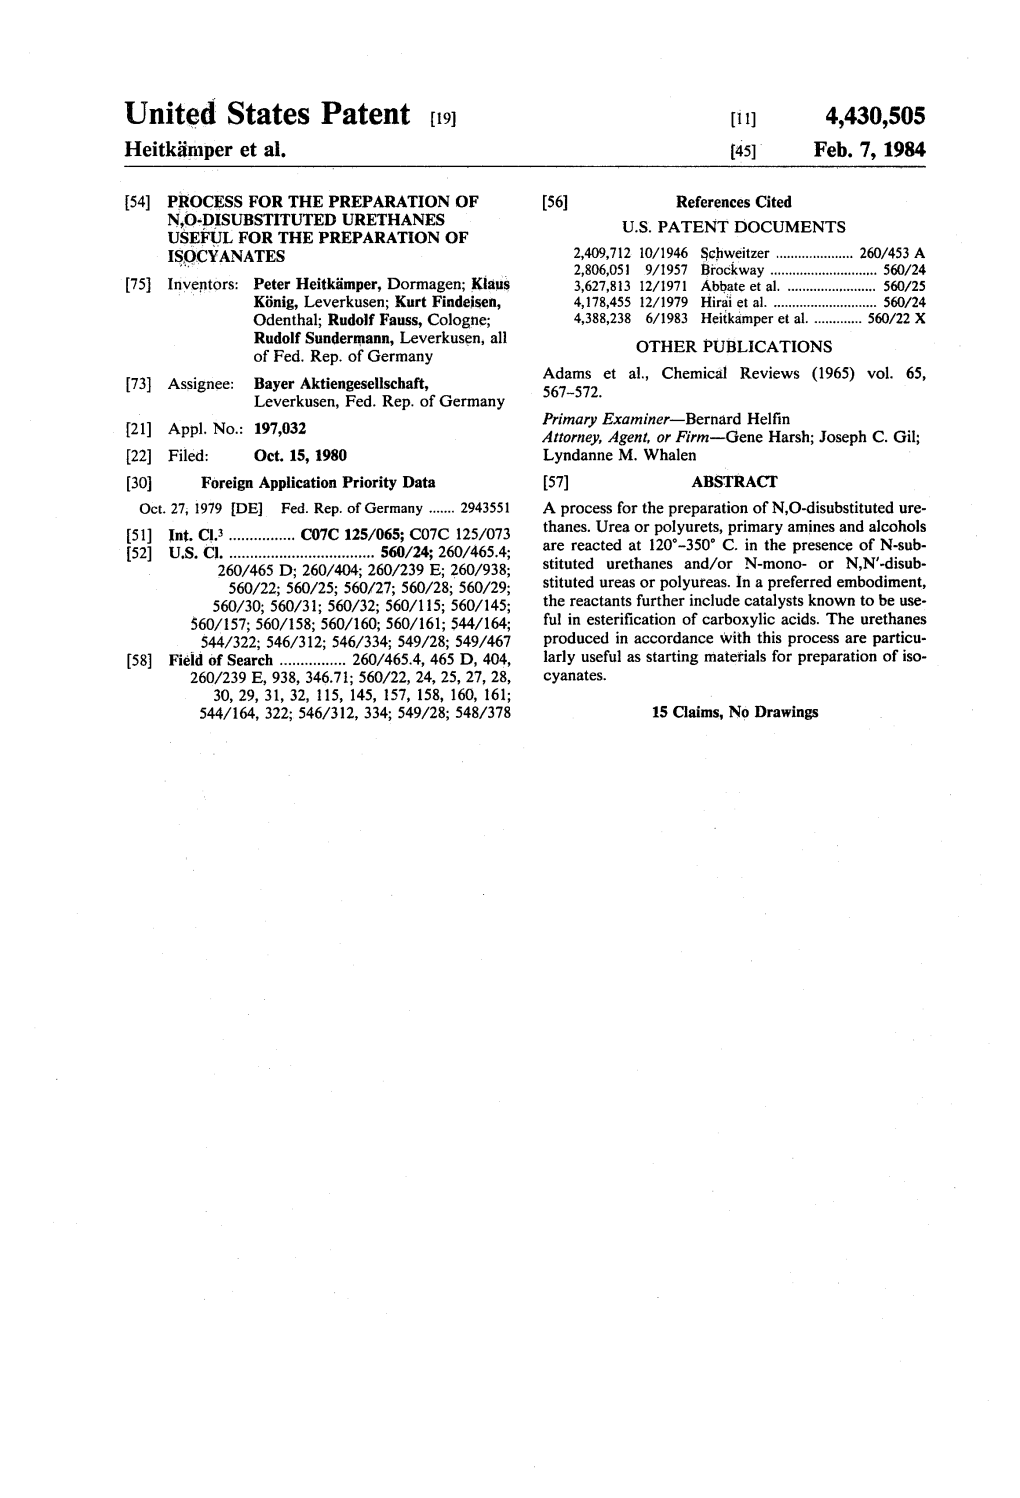 United States Patent (19) 11) 4,430,505 Heitkämper Et Al